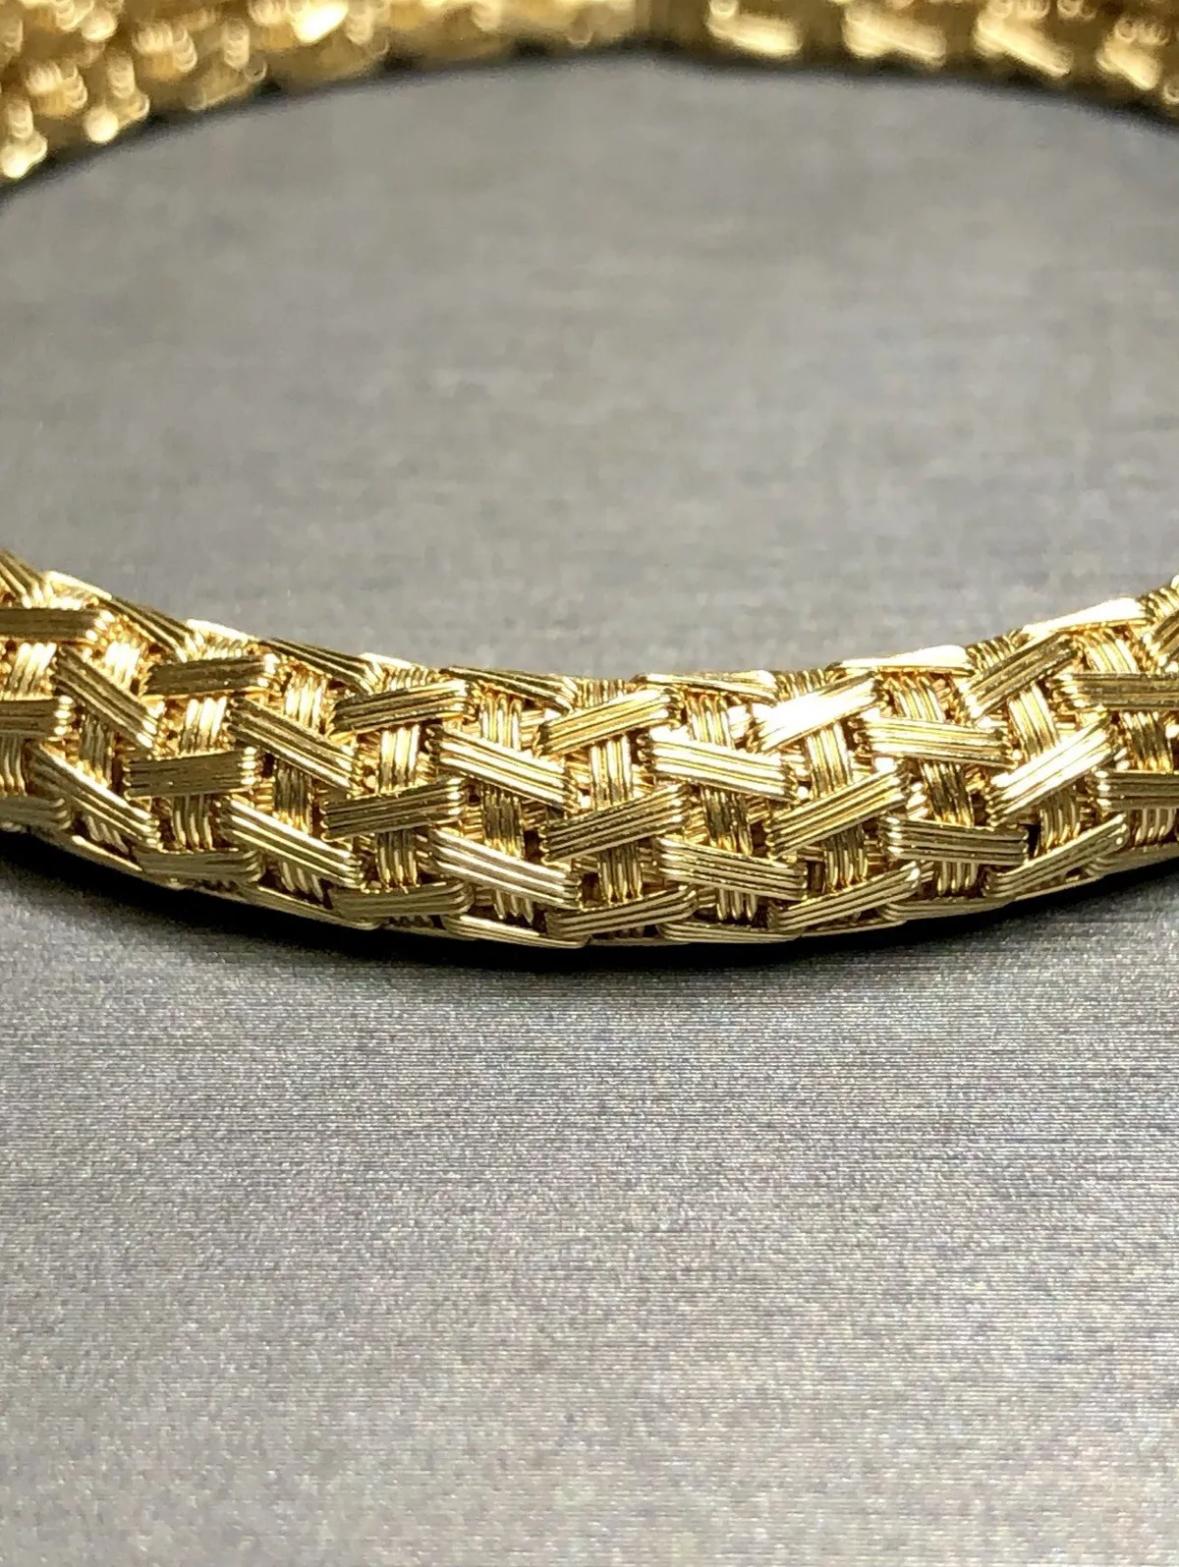 
Un bracelet finement réalisé en or jaune 18 carats dans un magnifique motif tissé détaillé. Complet avec fermoir à bague et sécurité.


Dimensions/Poids :

Le bracelet mesure 7